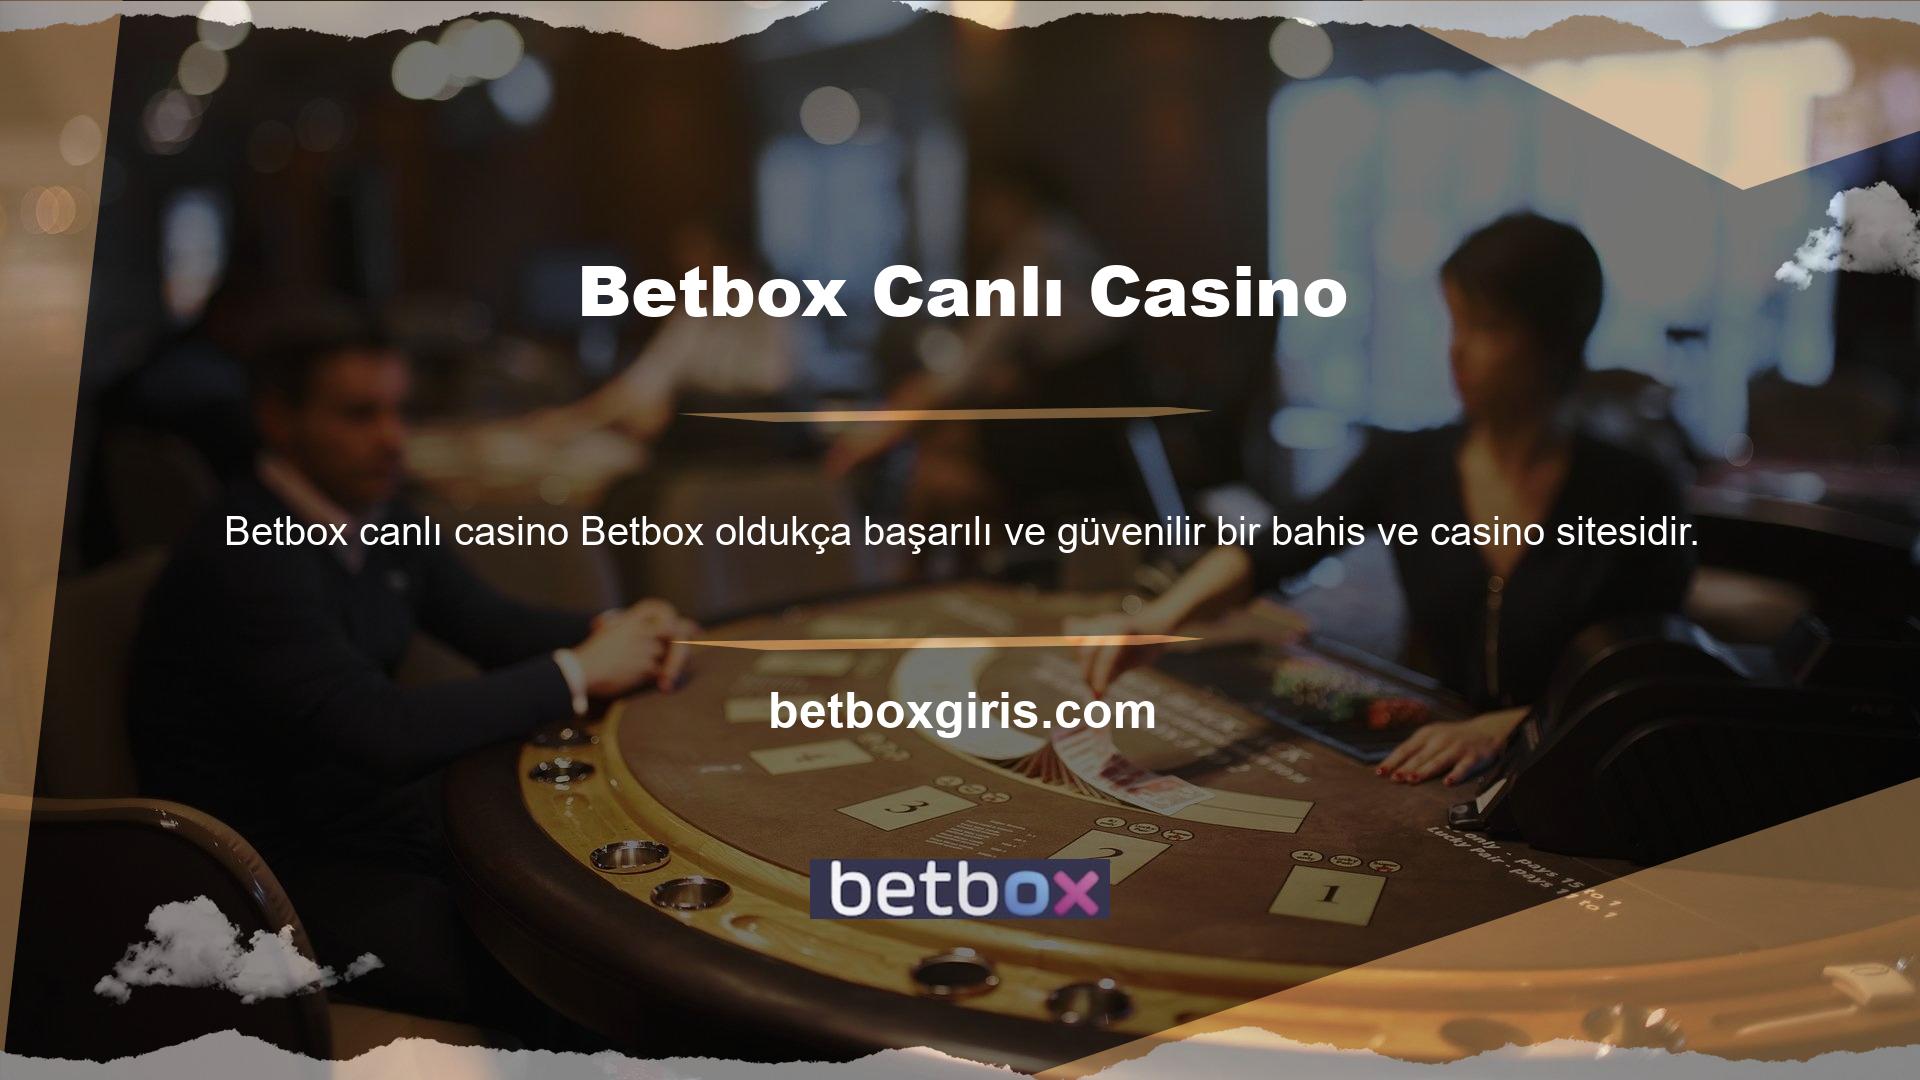 Betbox canlı casino oyunları, sitesinde onlarca hatta yüzlerce oyun türü ile adından söz ettirmektedir